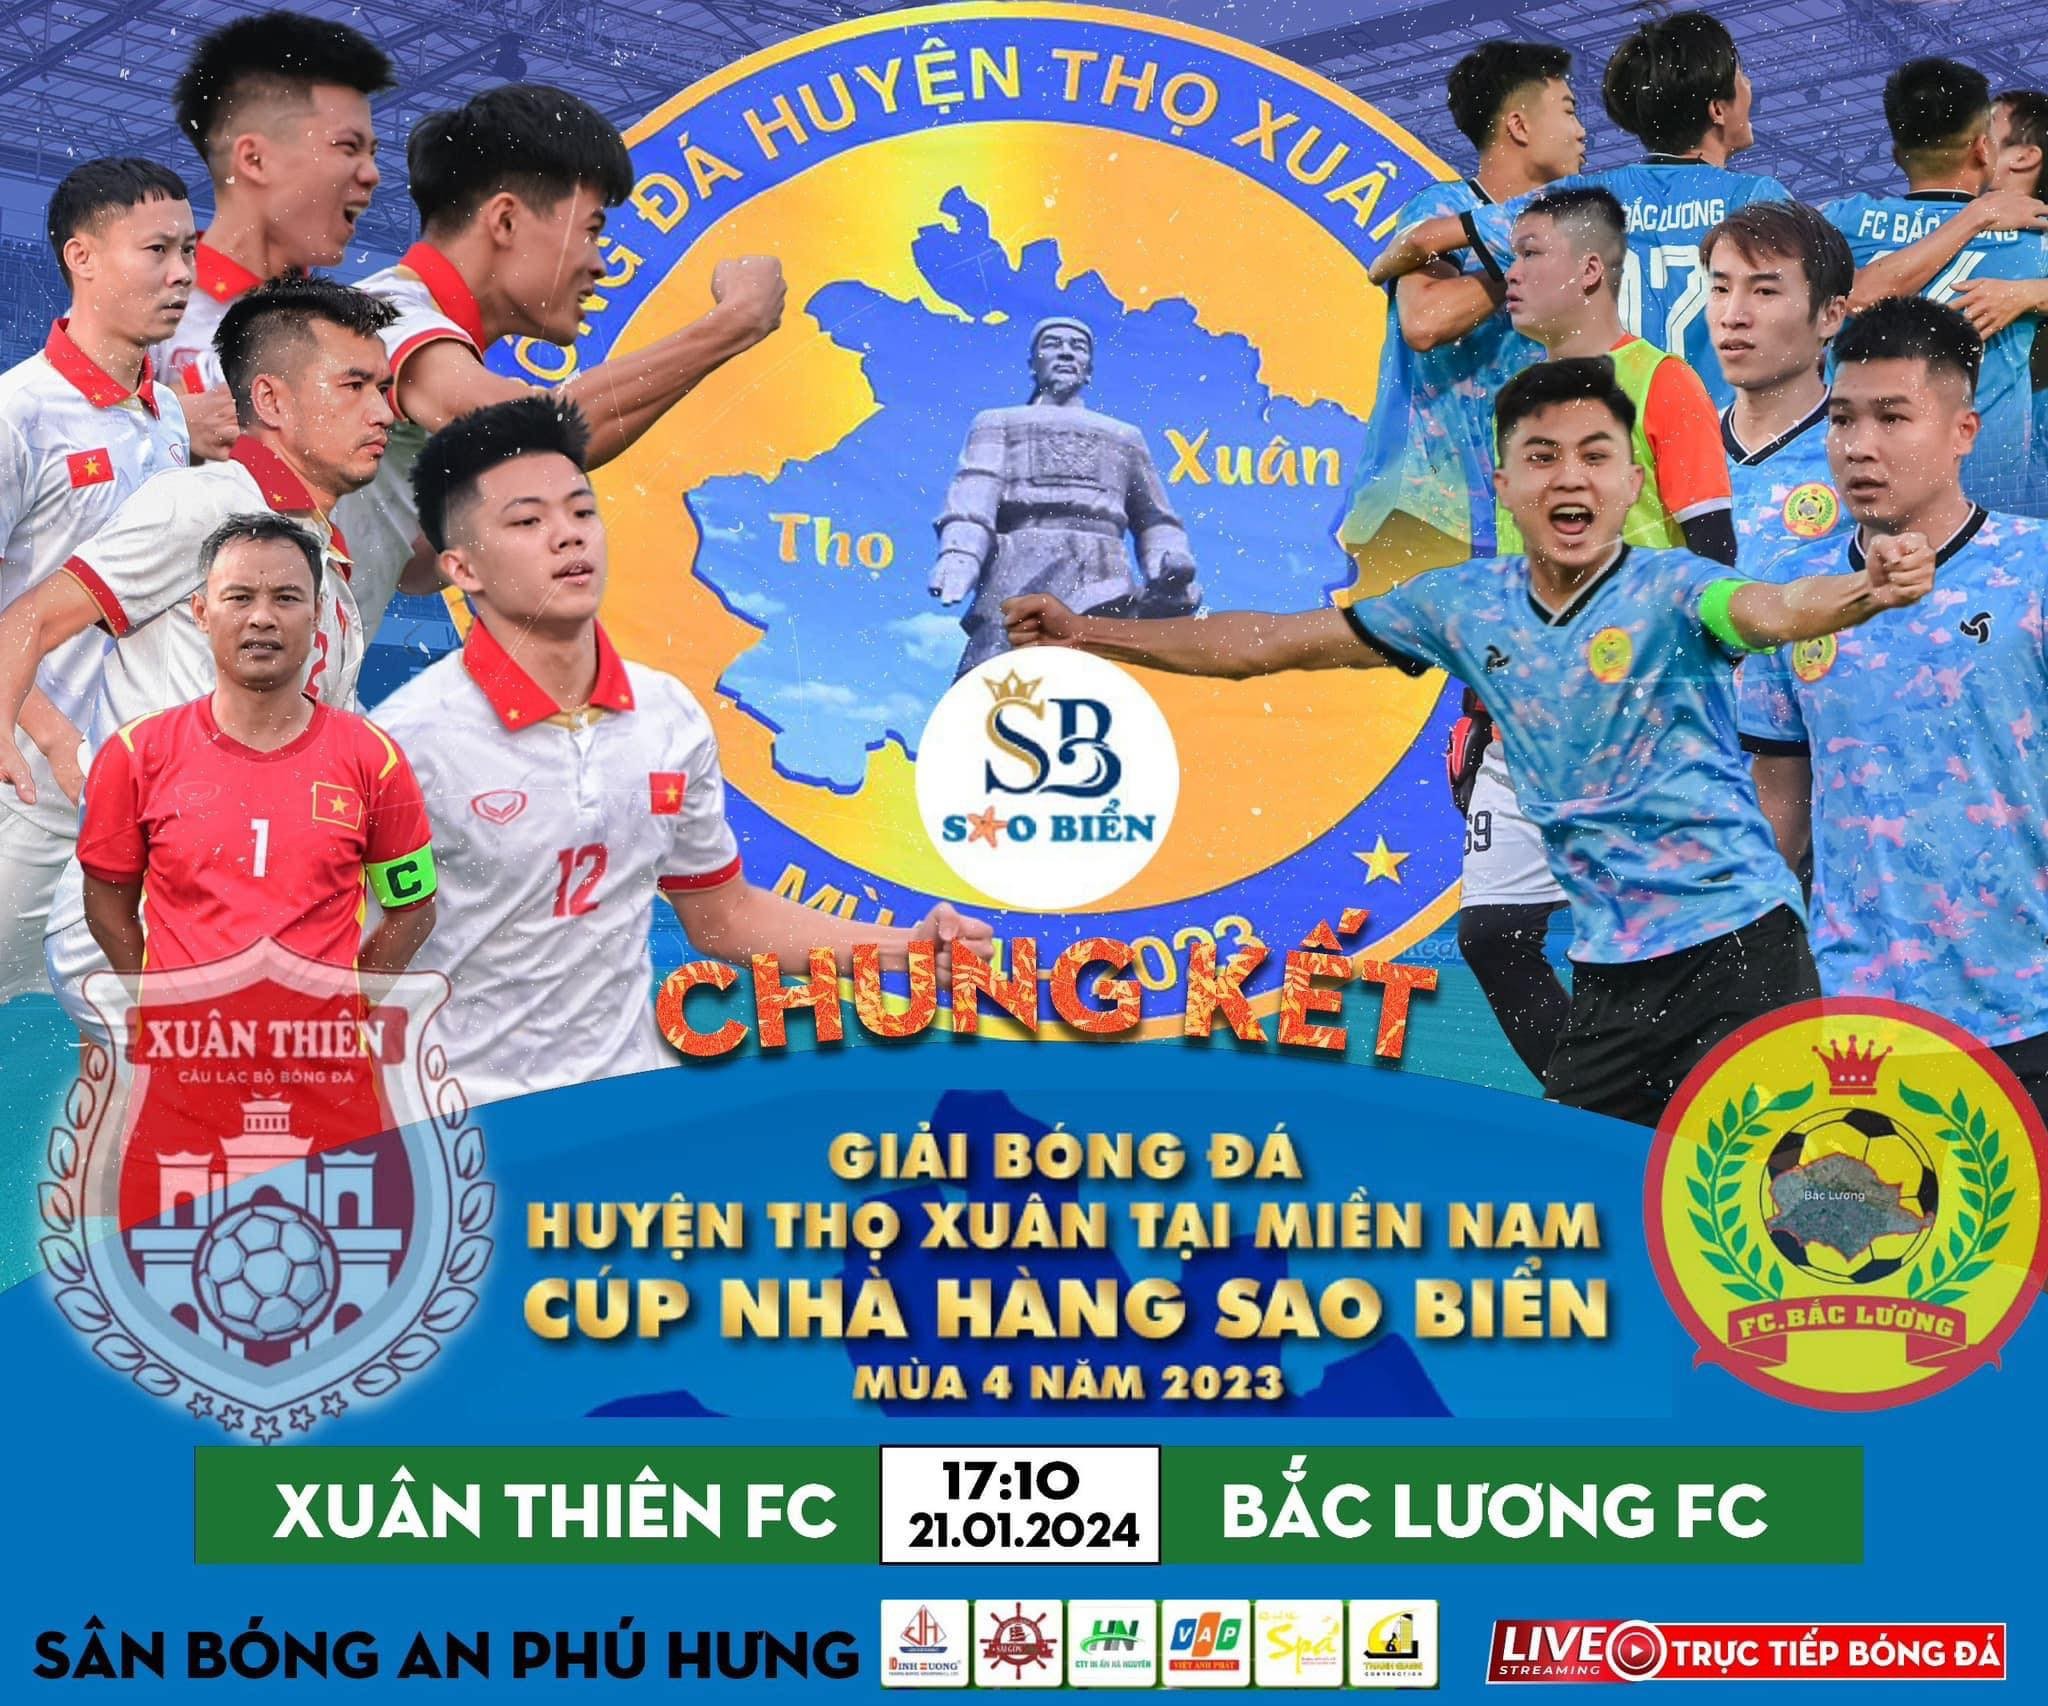 FC Bắc Lương với niềm tin tuyệt đối vào chiến thắng, liệu FC Xuân Thiên có giữ được ngôi vương?